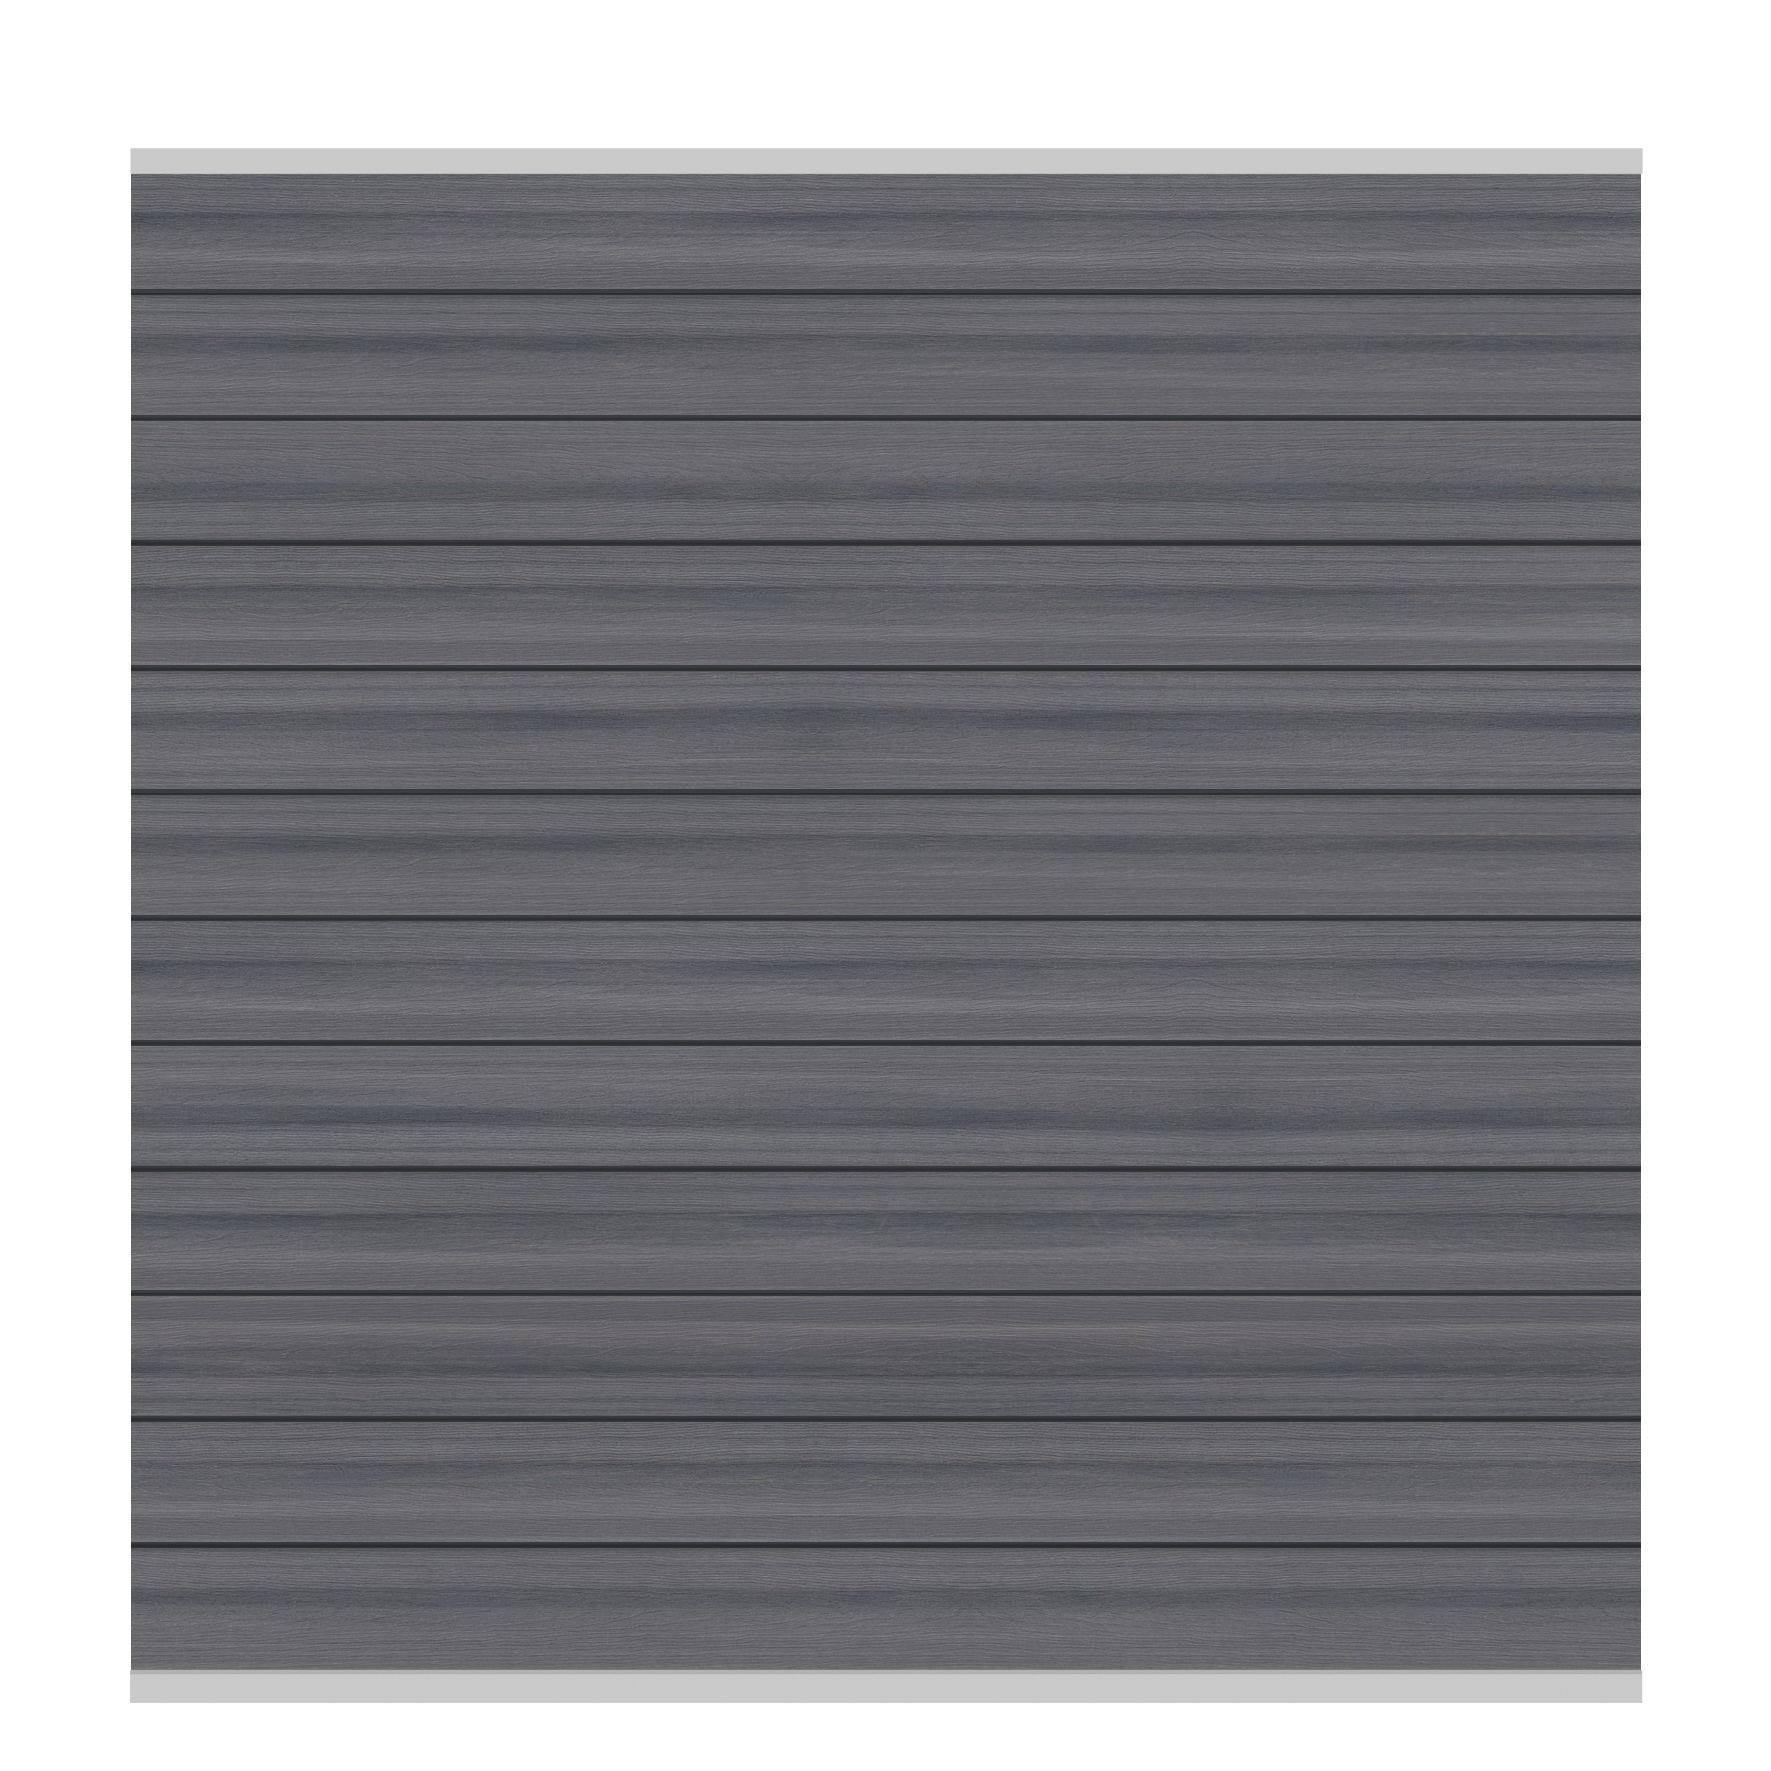 Systeem platinum scherm-set grijs, zilver lijst - 178 x 184